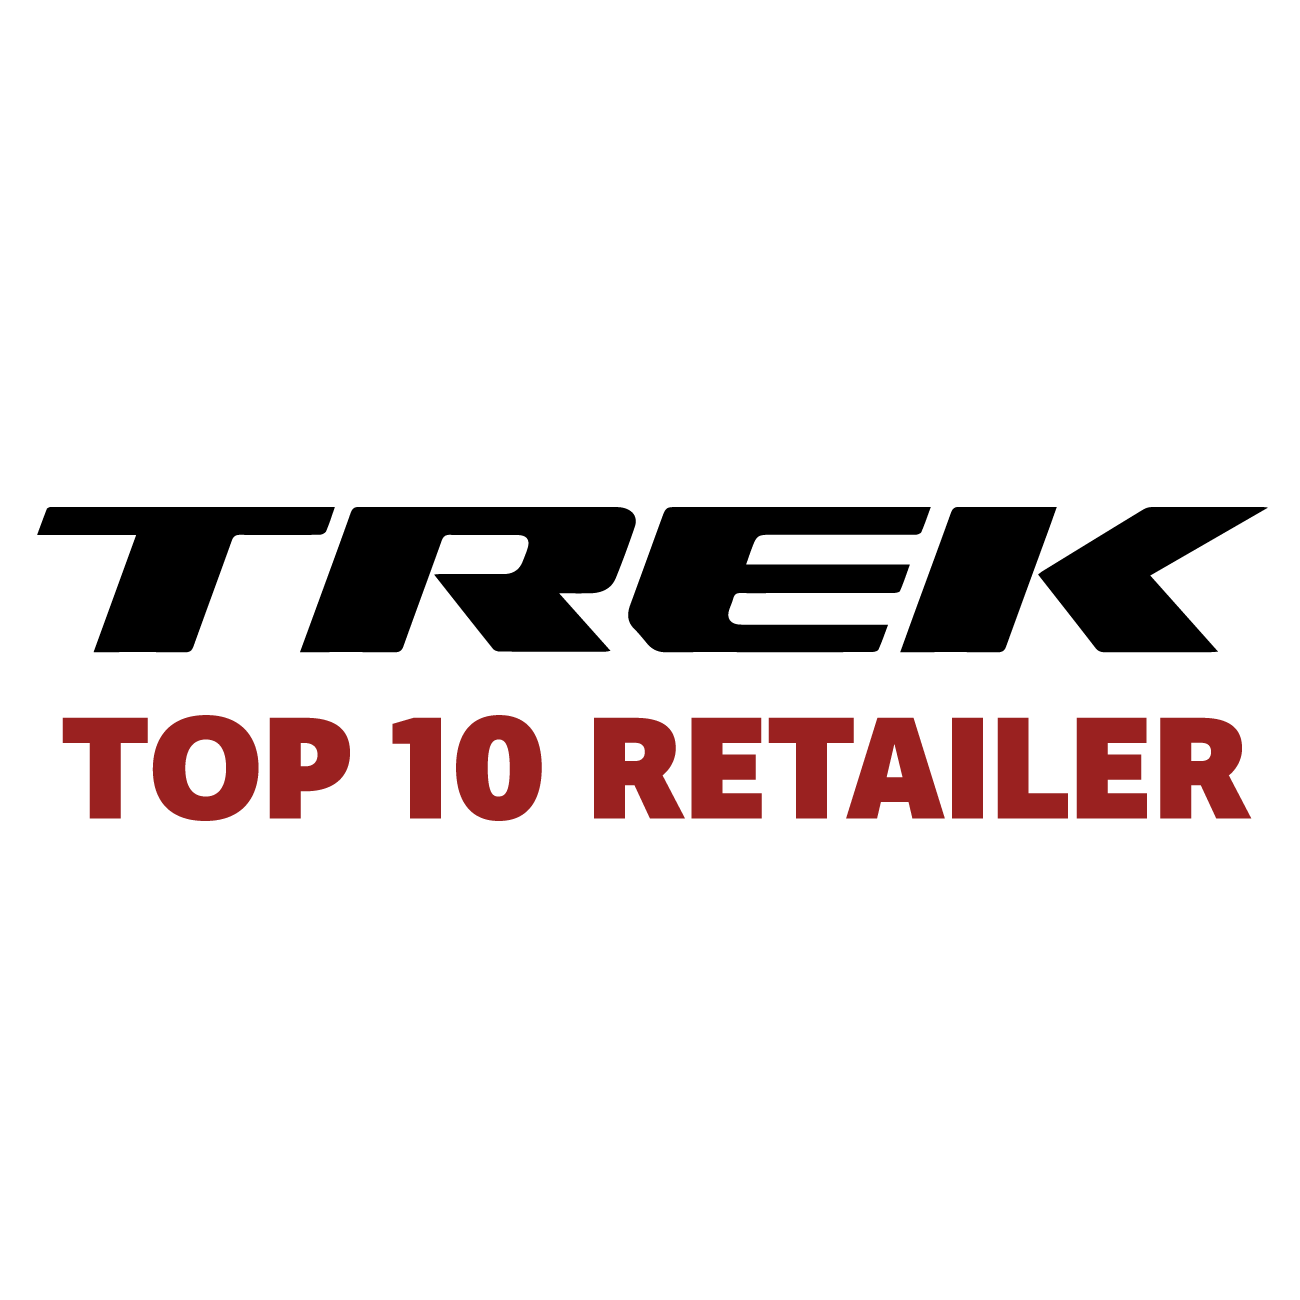 Trek Top 10 Retailer